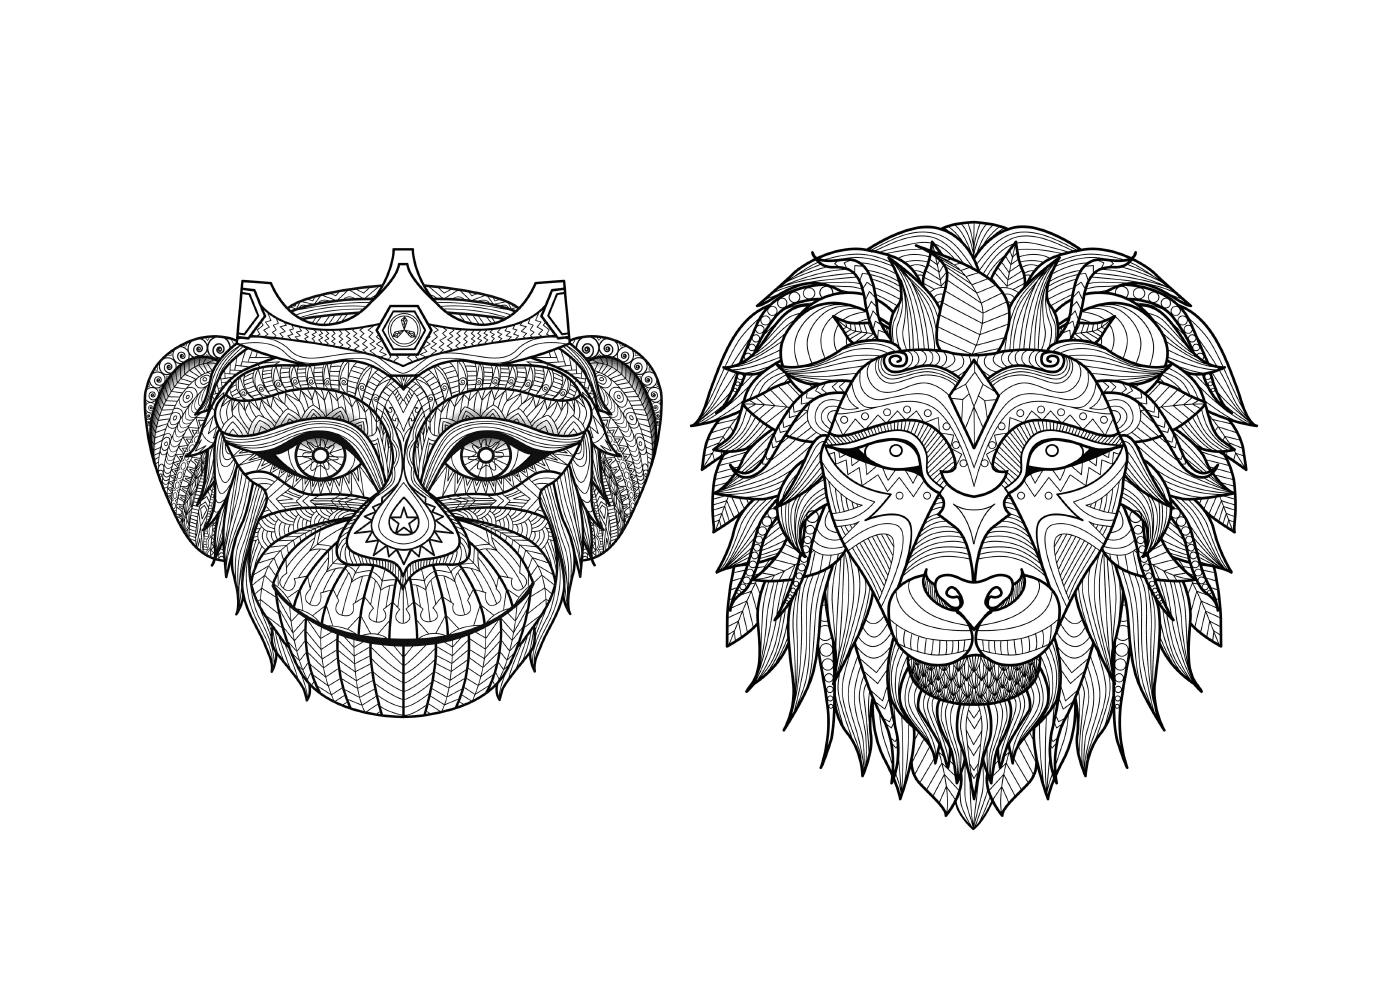  Dos dibujos en blanco y negro de un león y un mono 